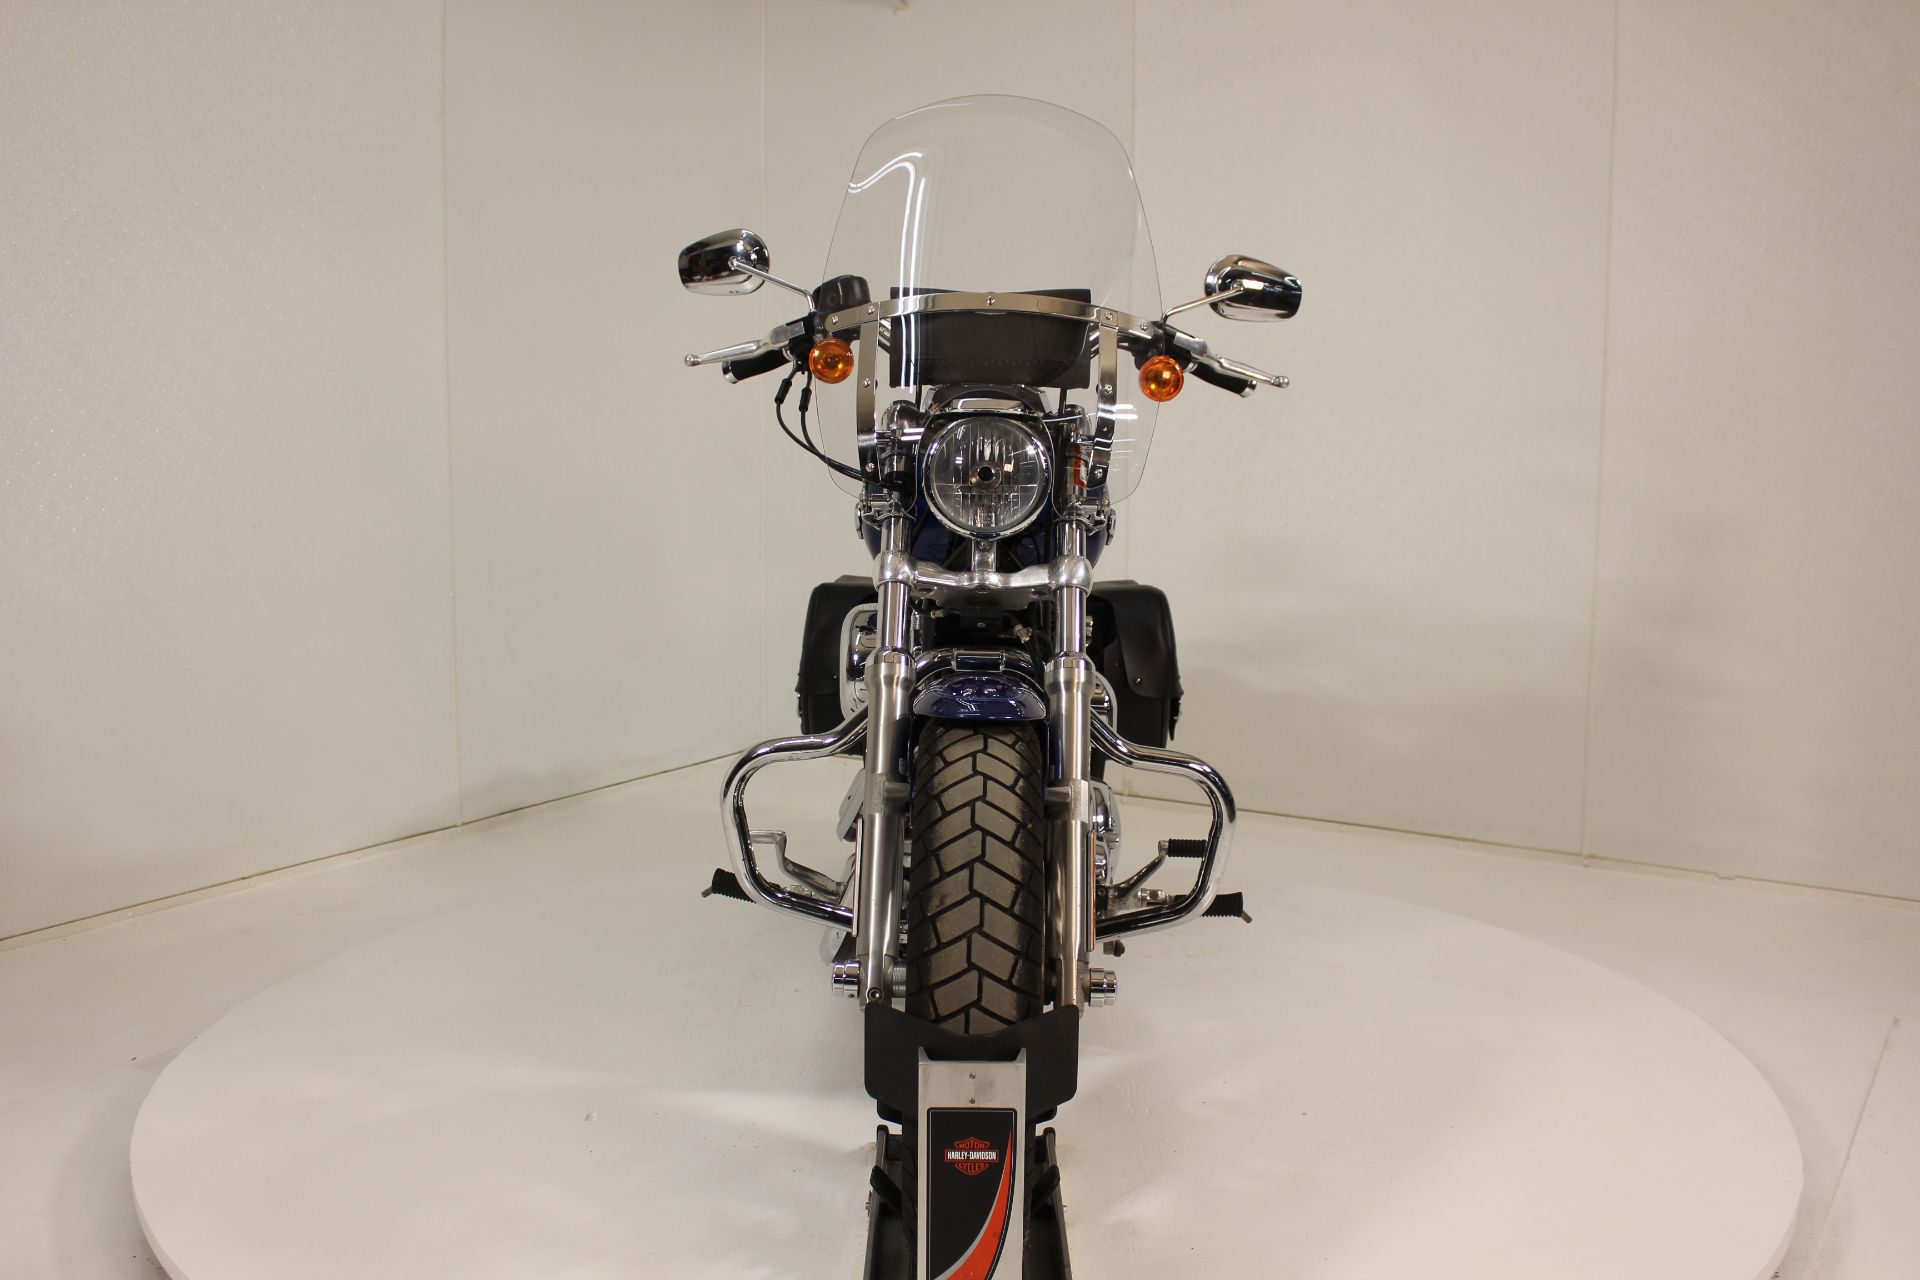 2015 Harley-Davidson 1200 Custom in Pittsfield, Massachusetts - Photo 7